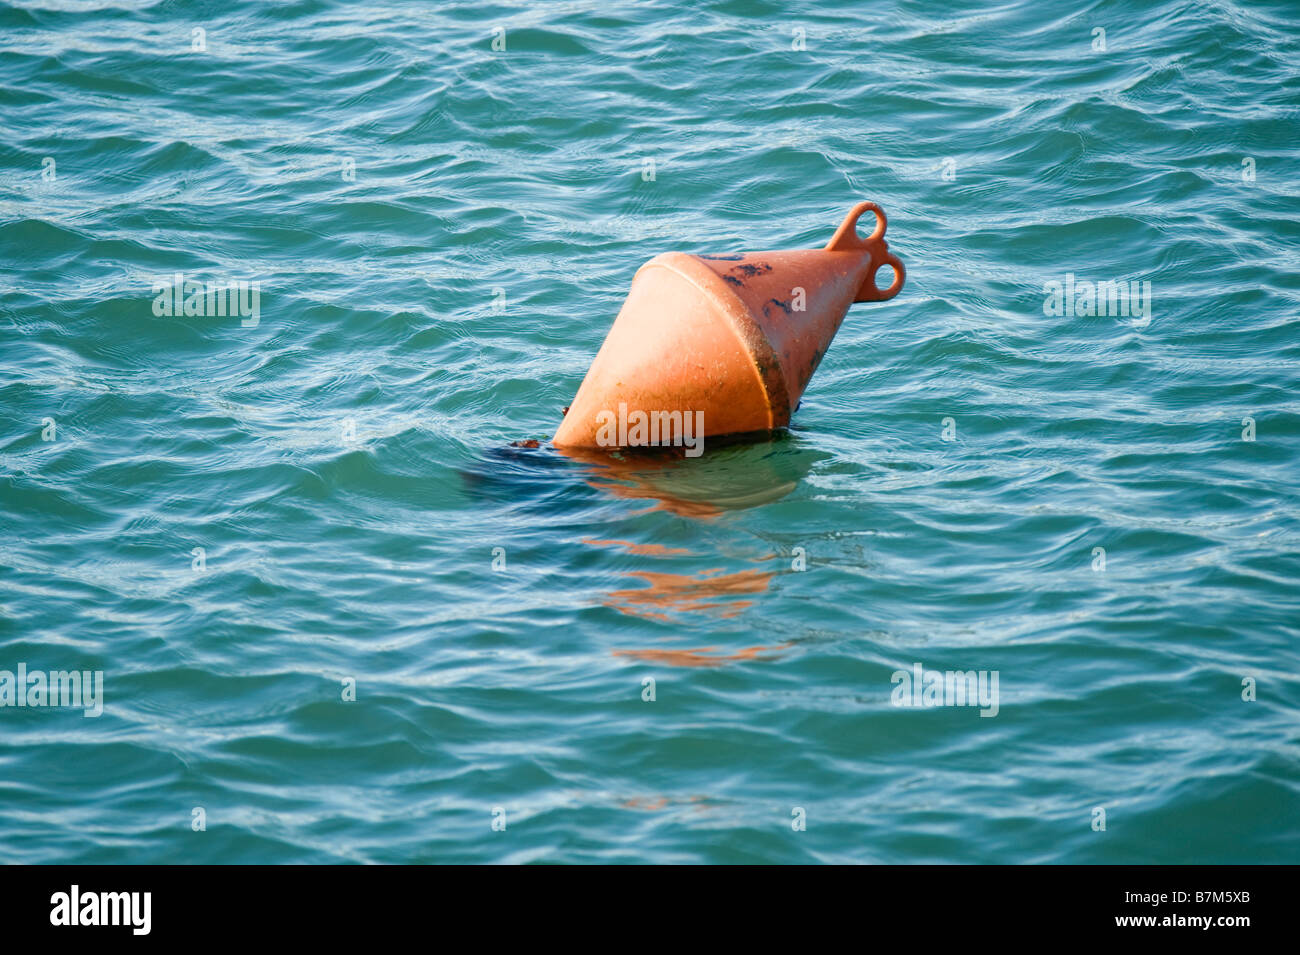 Orange buoy, France Stock Photo